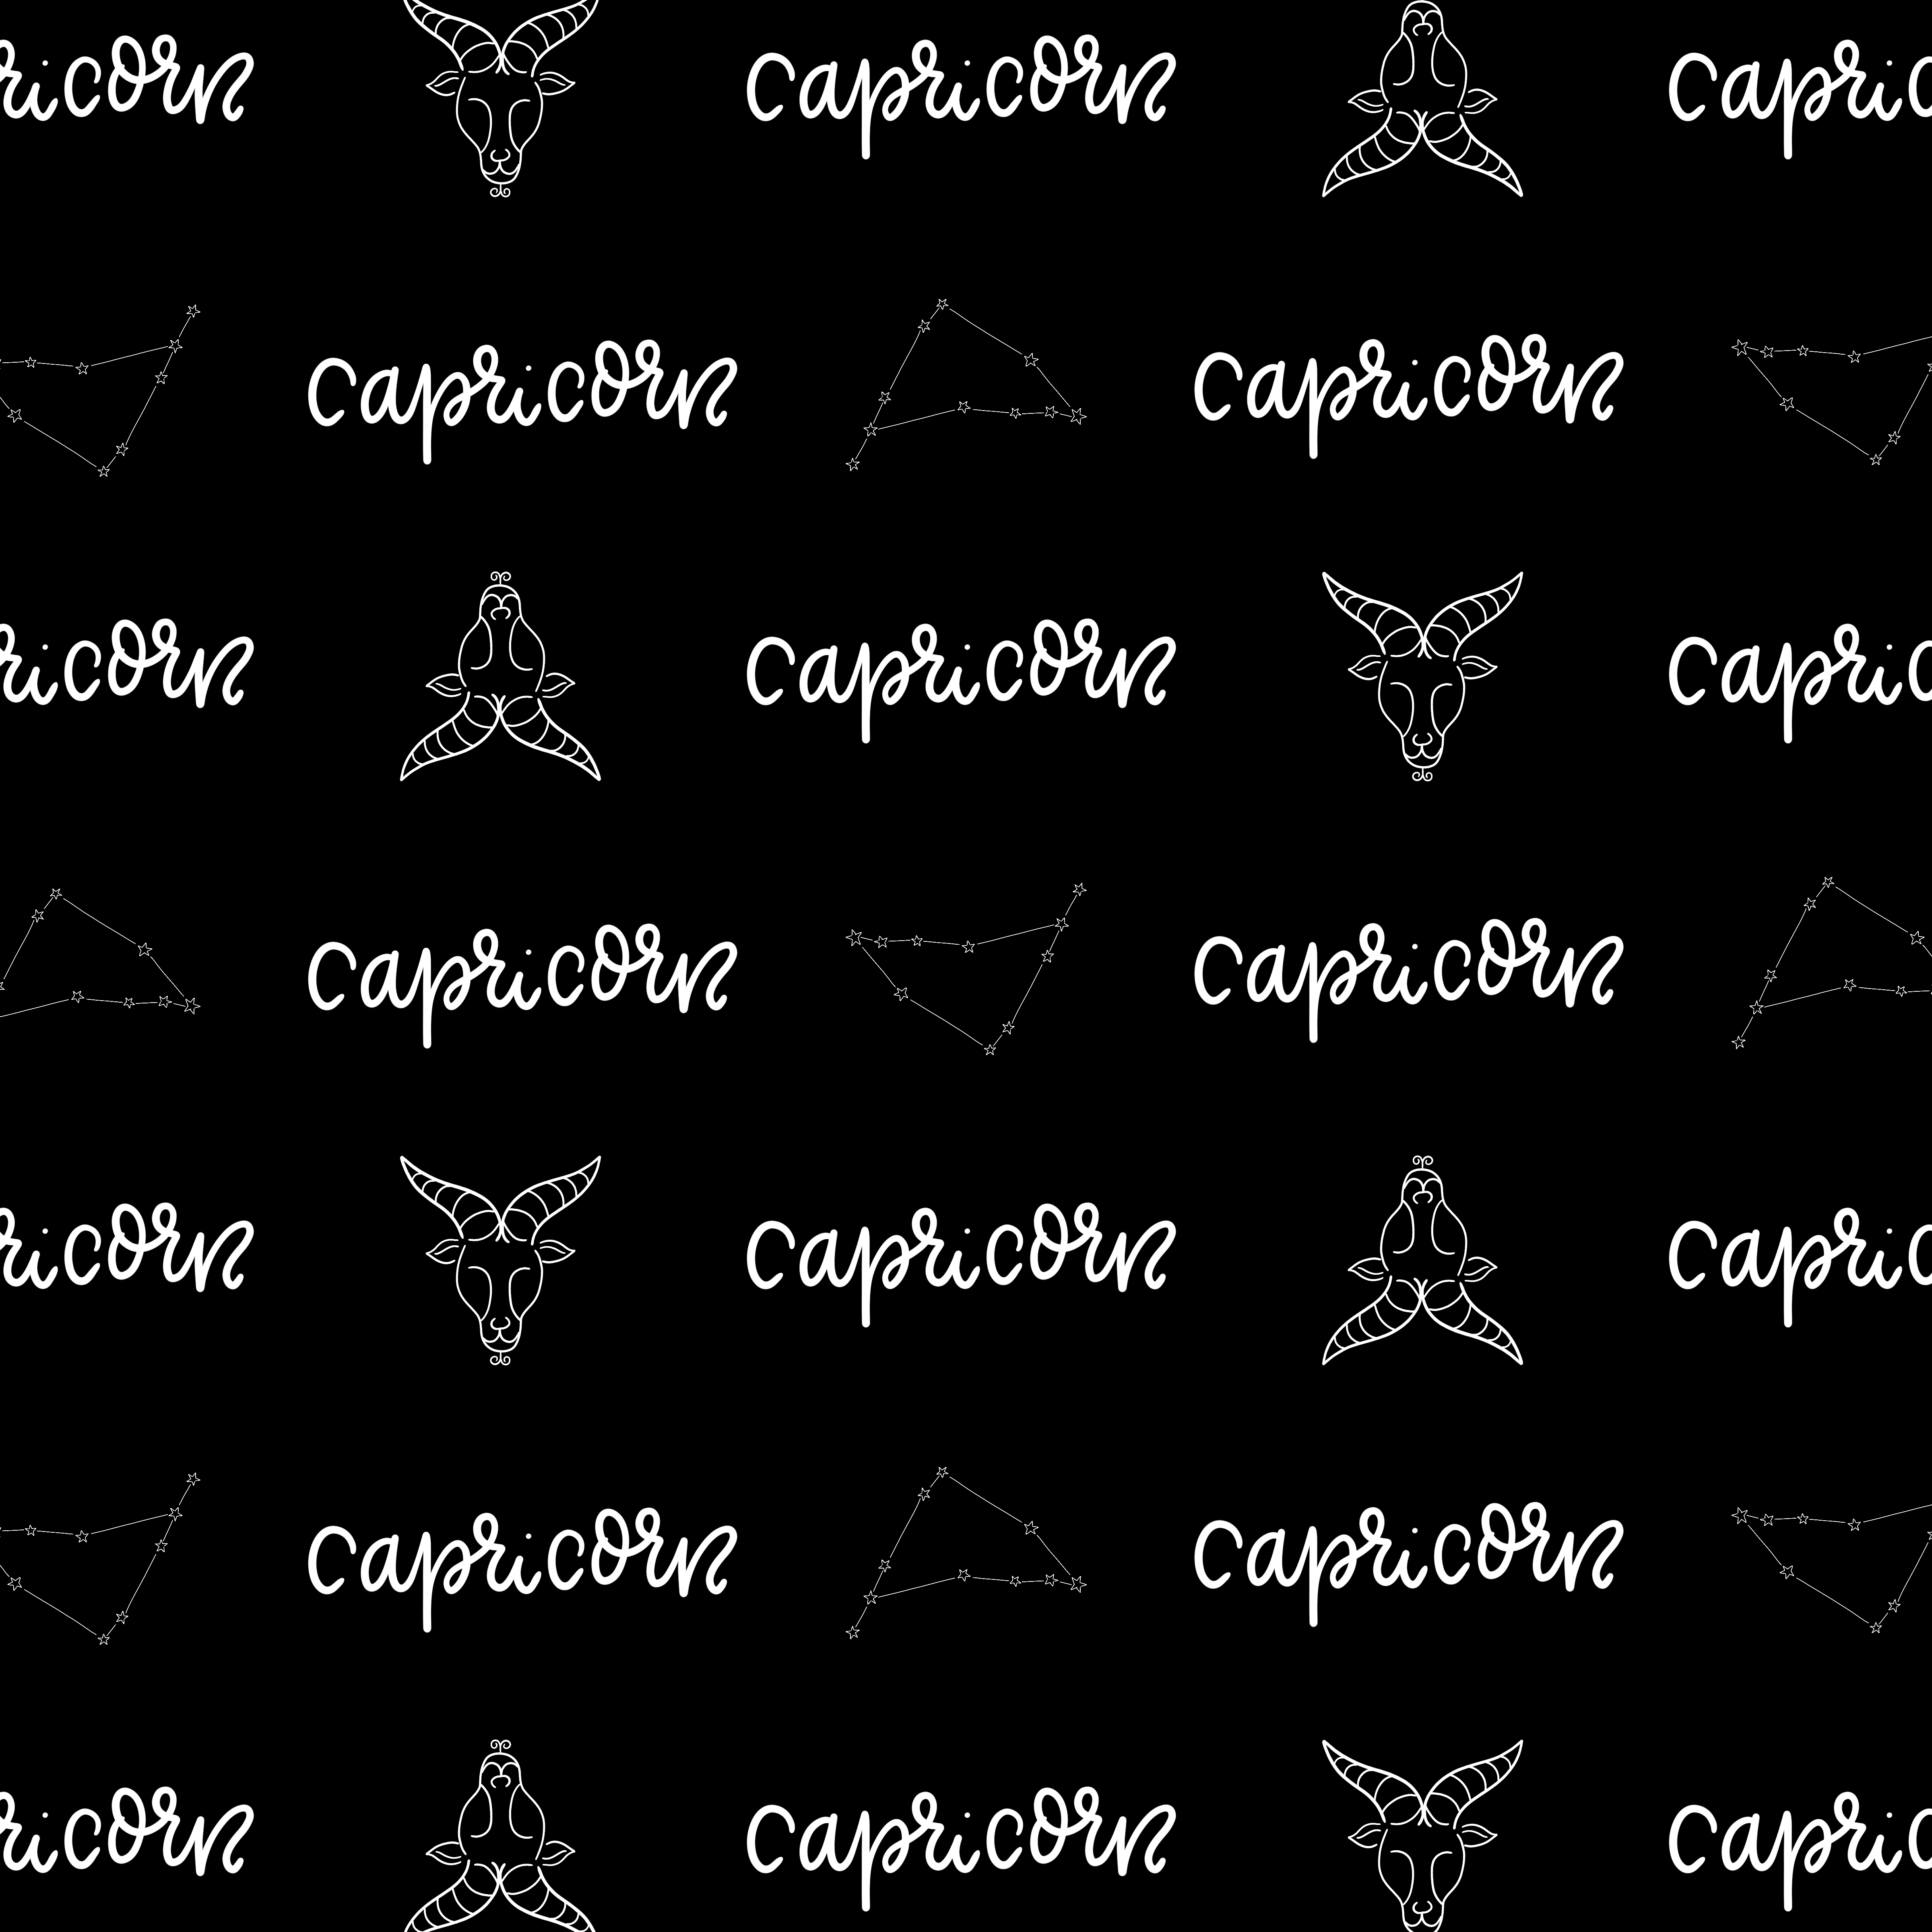 Capricorn_Wallpaper_BlackBckgrd